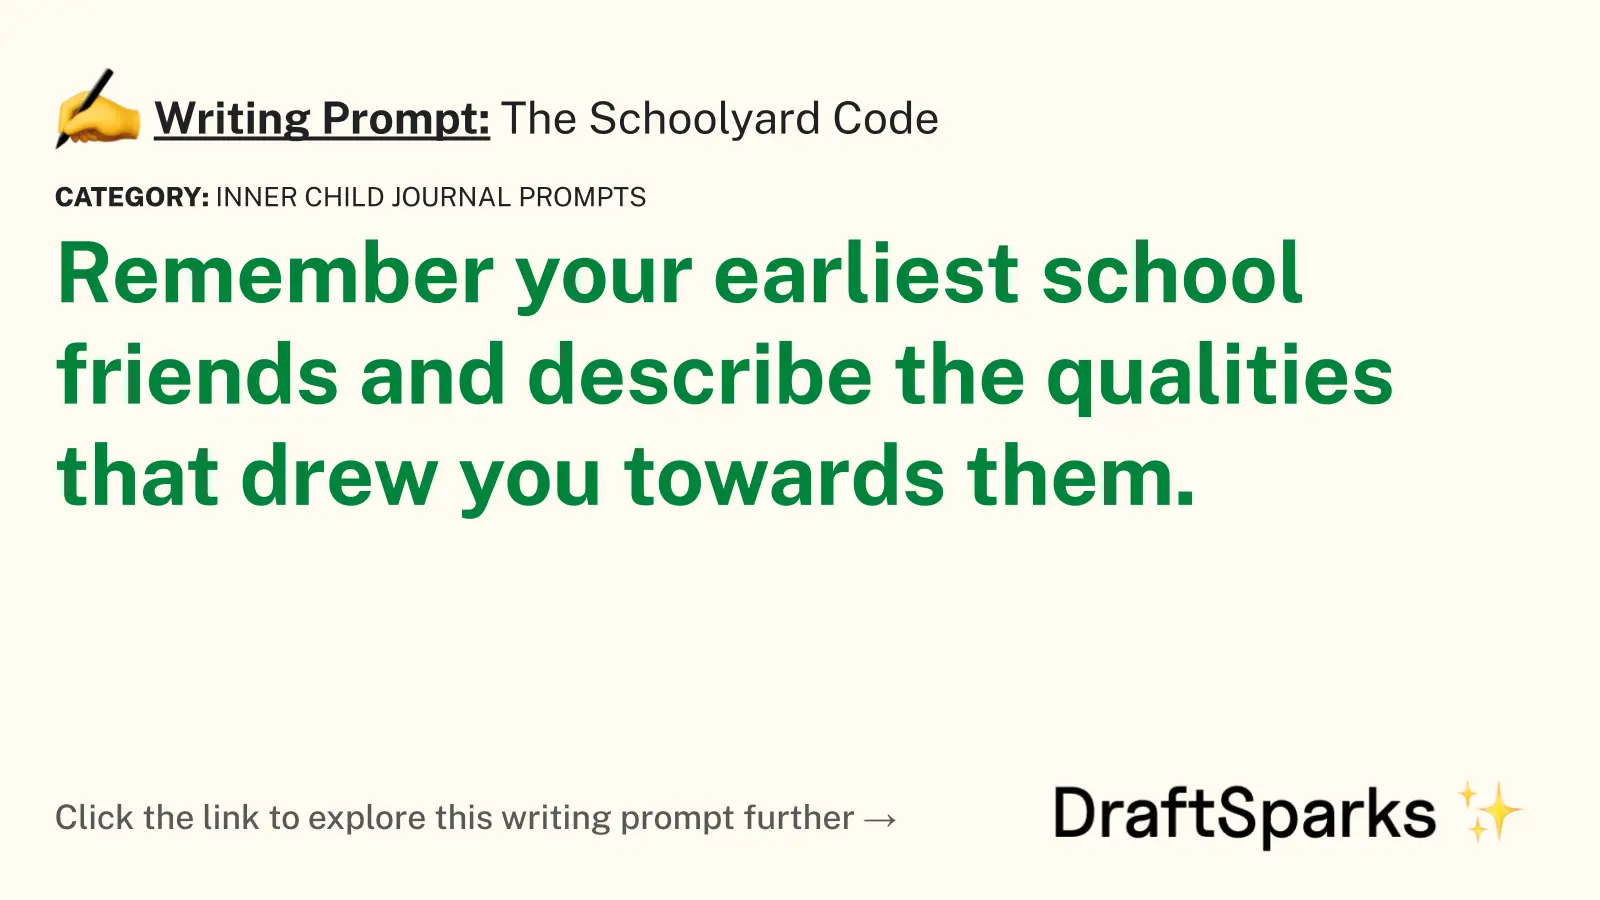 The Schoolyard Code